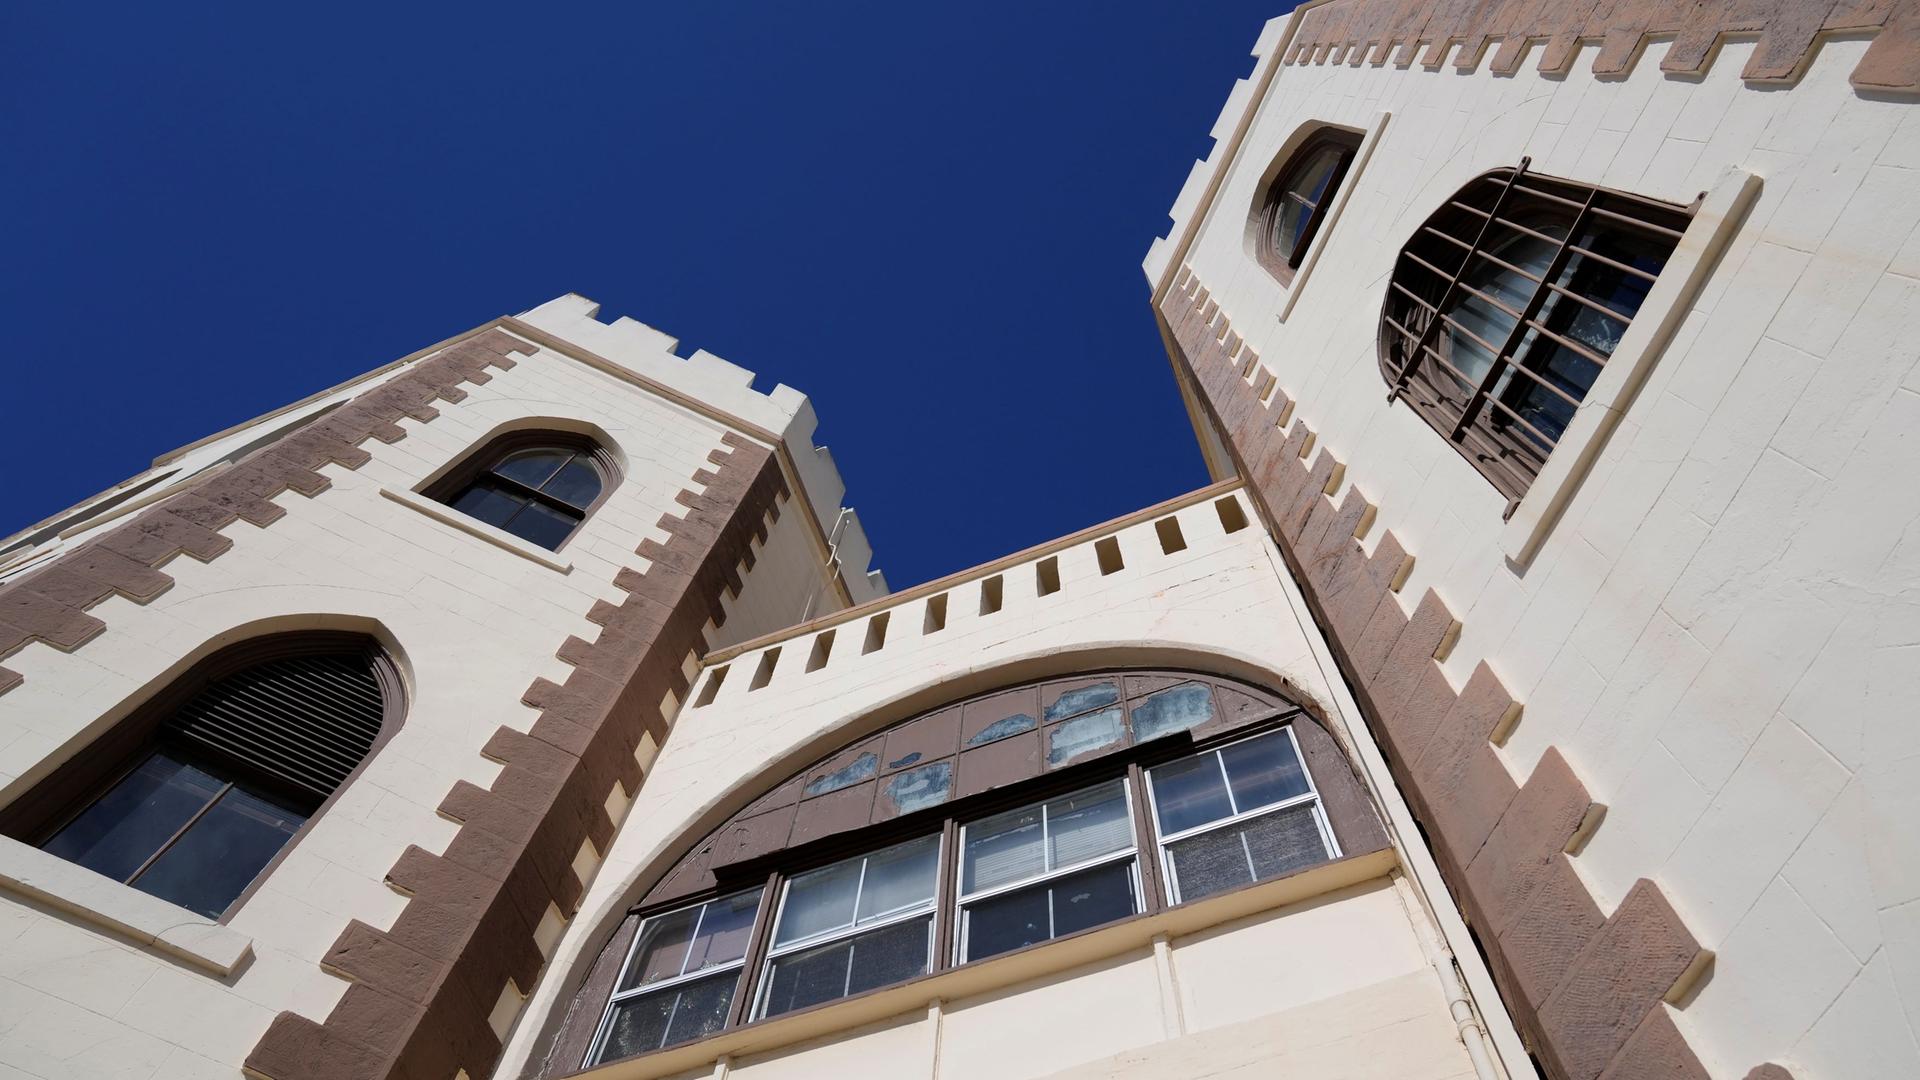 Blick auf die historischen Gebäudetürme von San Quentin, die sich in den blauen Himmel recken.